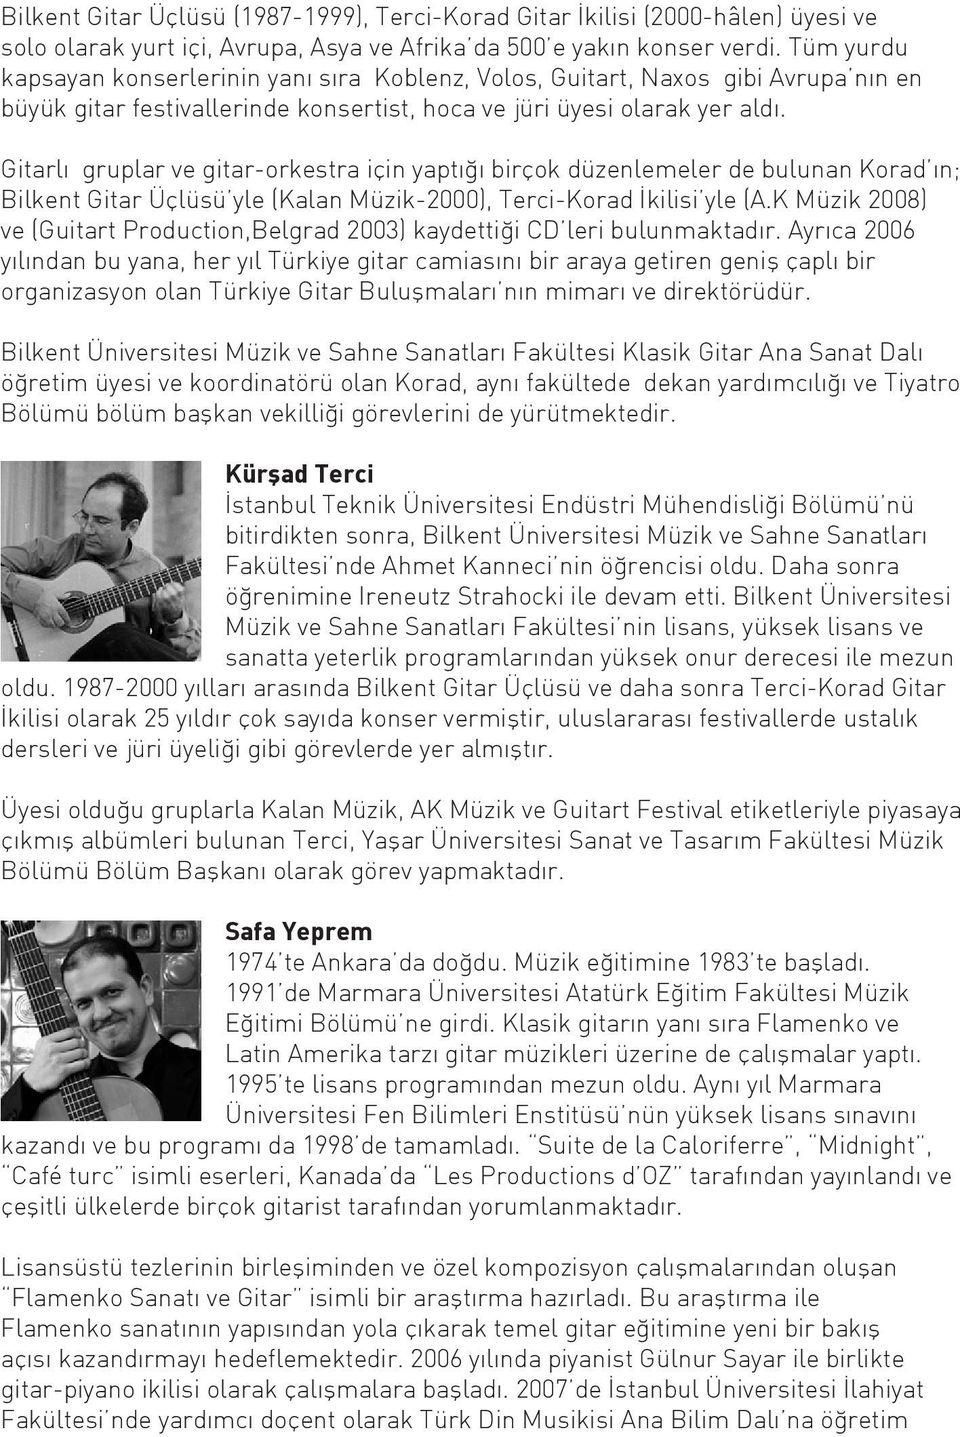 Gitarlı gruplar ve gitar-orkestra için yaptığı birçok düzenlemeler de bulunan Korad ın; Bilkent Gitar Üçlüsü yle (Kalan Müzik-2000), Terci-Korad İkilisi yle (A.